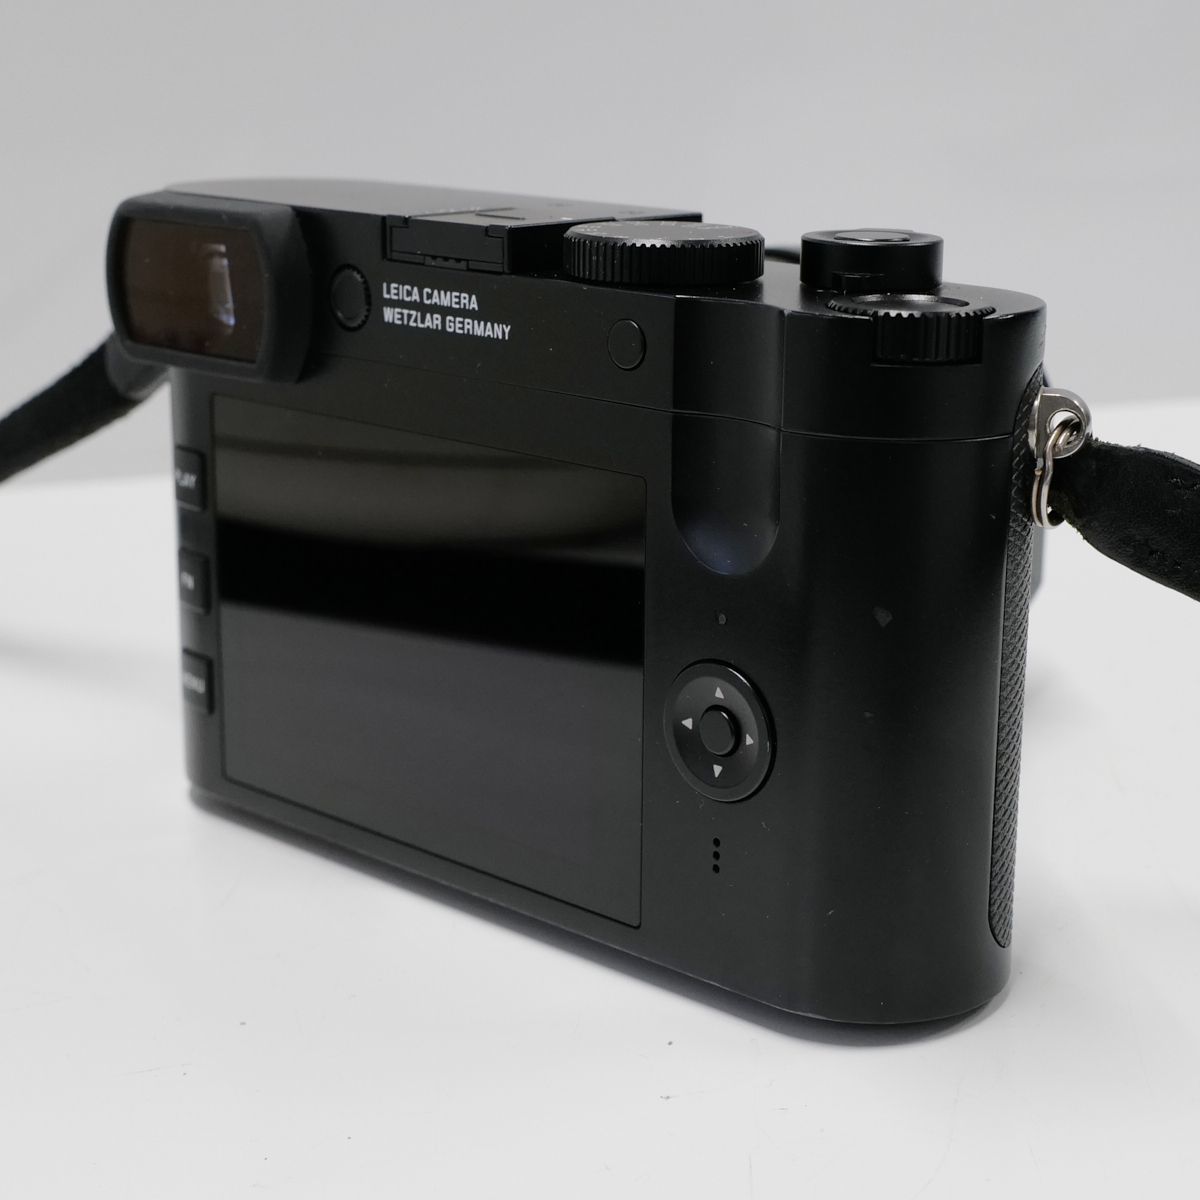 LEICA Q2 USED прекрасный товар цифровая камера корпус + аккумулятор полный размер одиночный подпалина пункт zmi look sf1.7/28mm ASPH высококлассный темно синий teji исправно работающий товар б/у CP5500